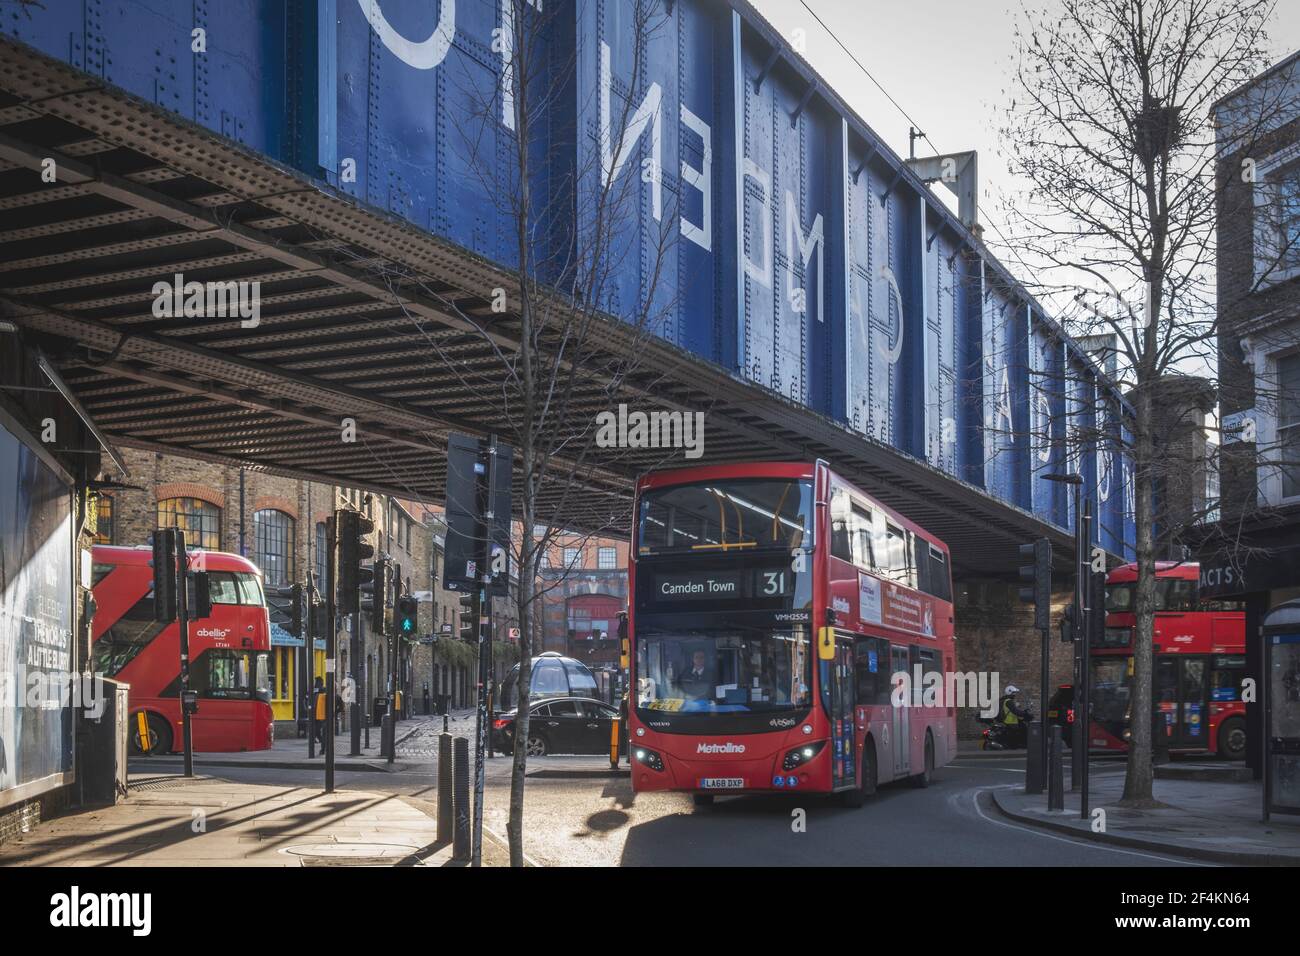 Camden Town, incrocio tra Castlehaven Rd. E Camden High Street, Routemaster & Metroline London autobus a due piani rossi, ponte ferroviario, Londra, Regno Unito Foto Stock